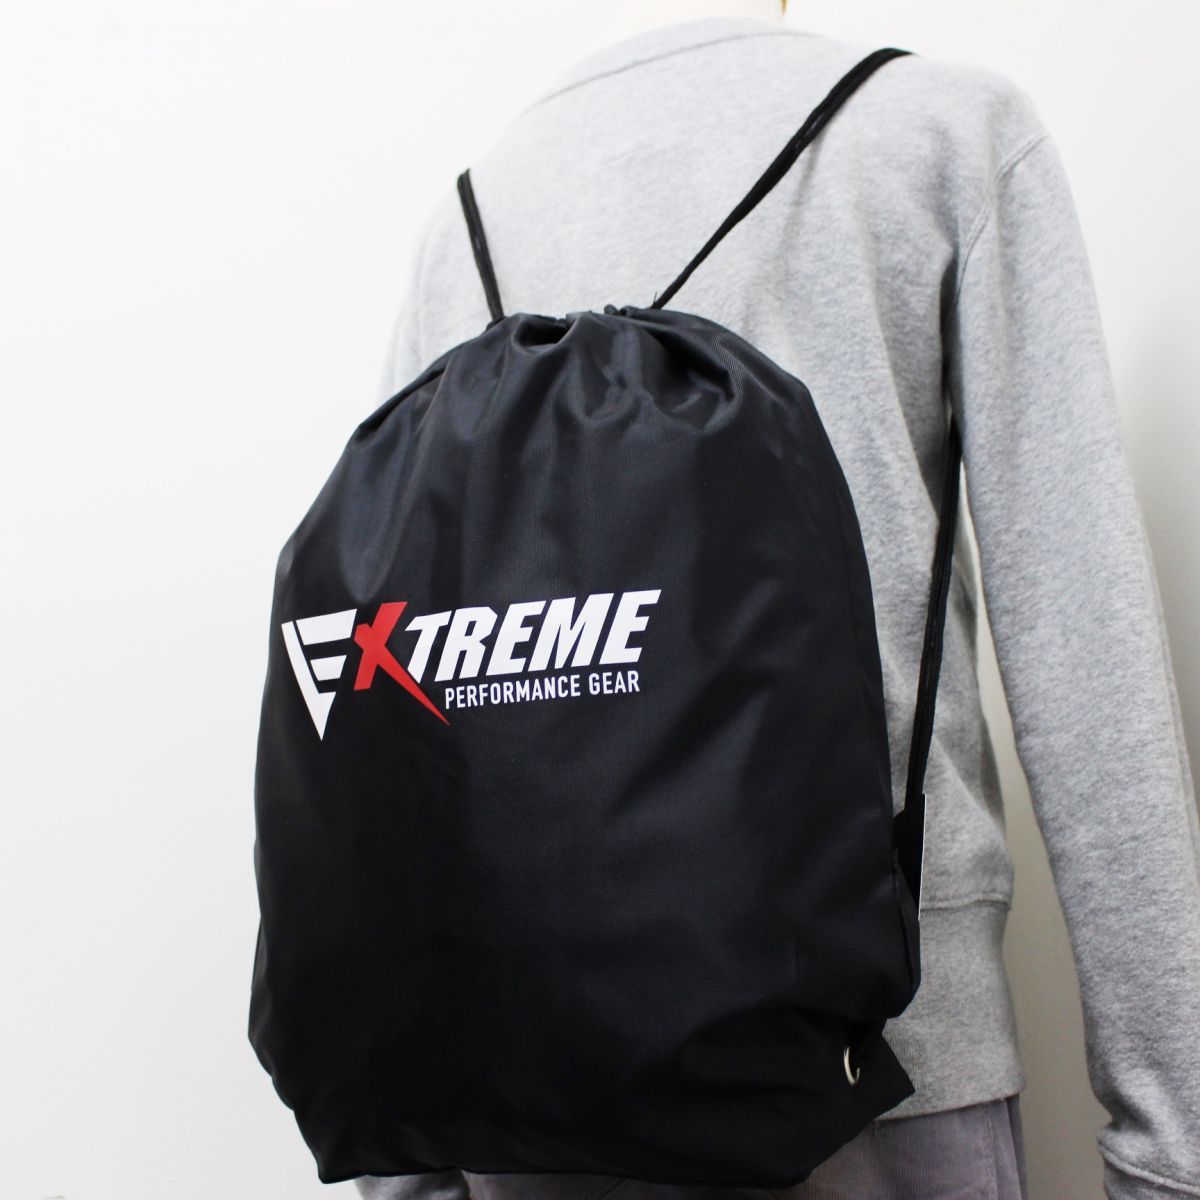 送料390円可能商品 ファイテン Phiten XTREME 軽量 シンプル ナップサック 鞄 かばん BAG バッグ 黒